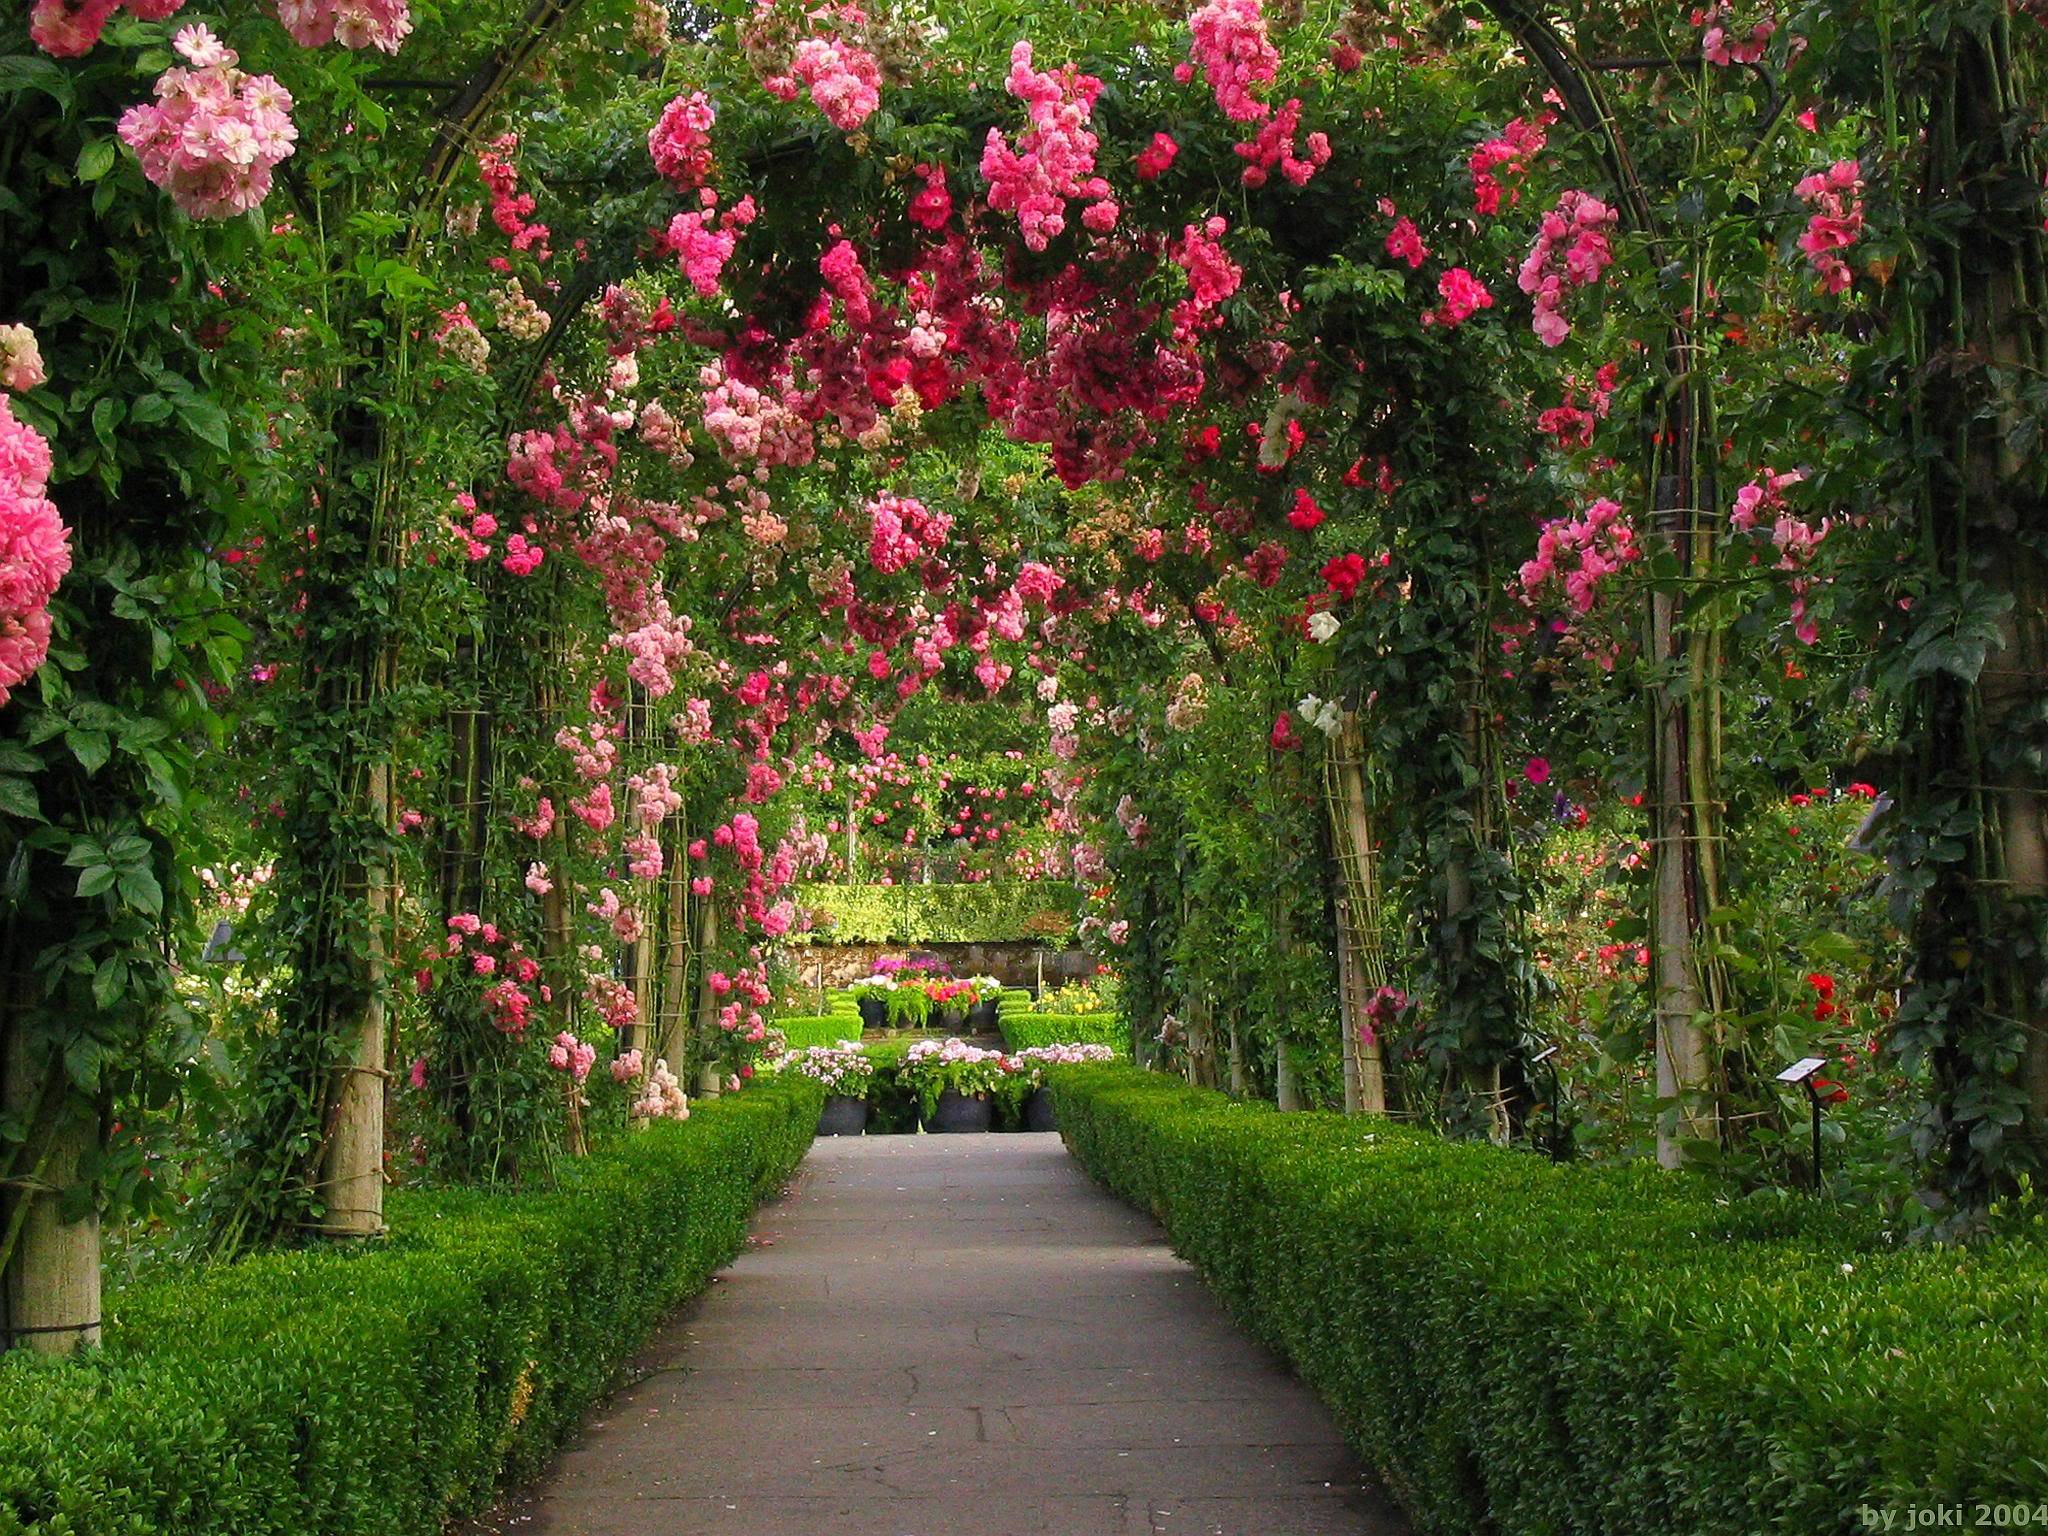 Pink Rose Garden Wallpaper. Garden. Home Image Area